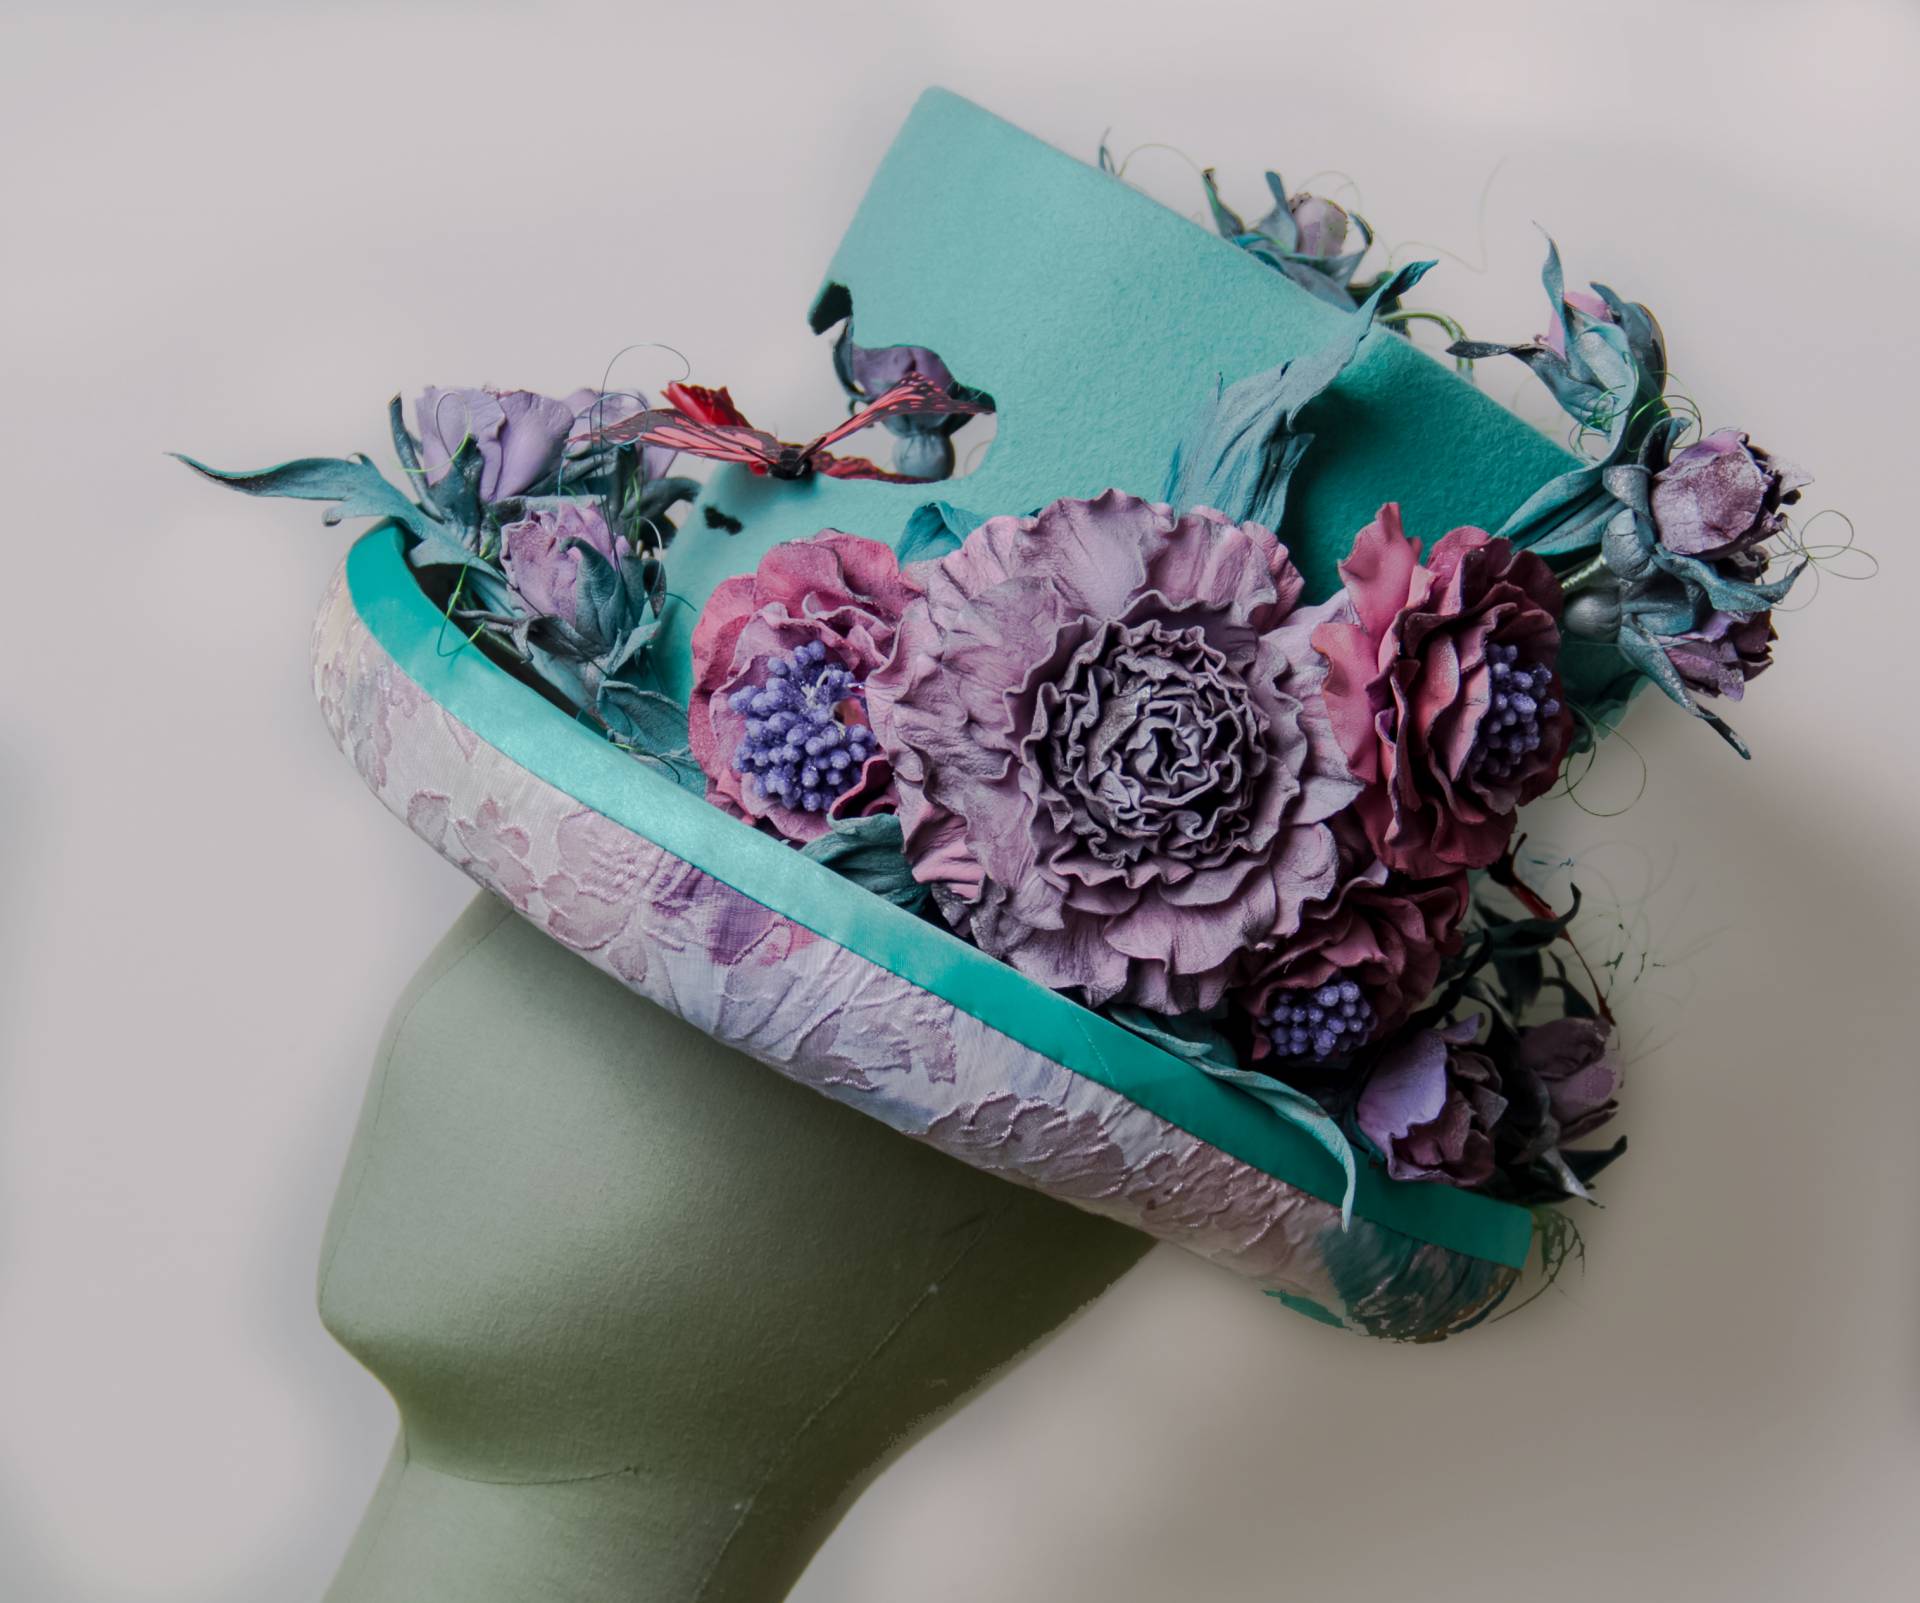 Las flores siempre son un motivo recurrente en sombrerería.